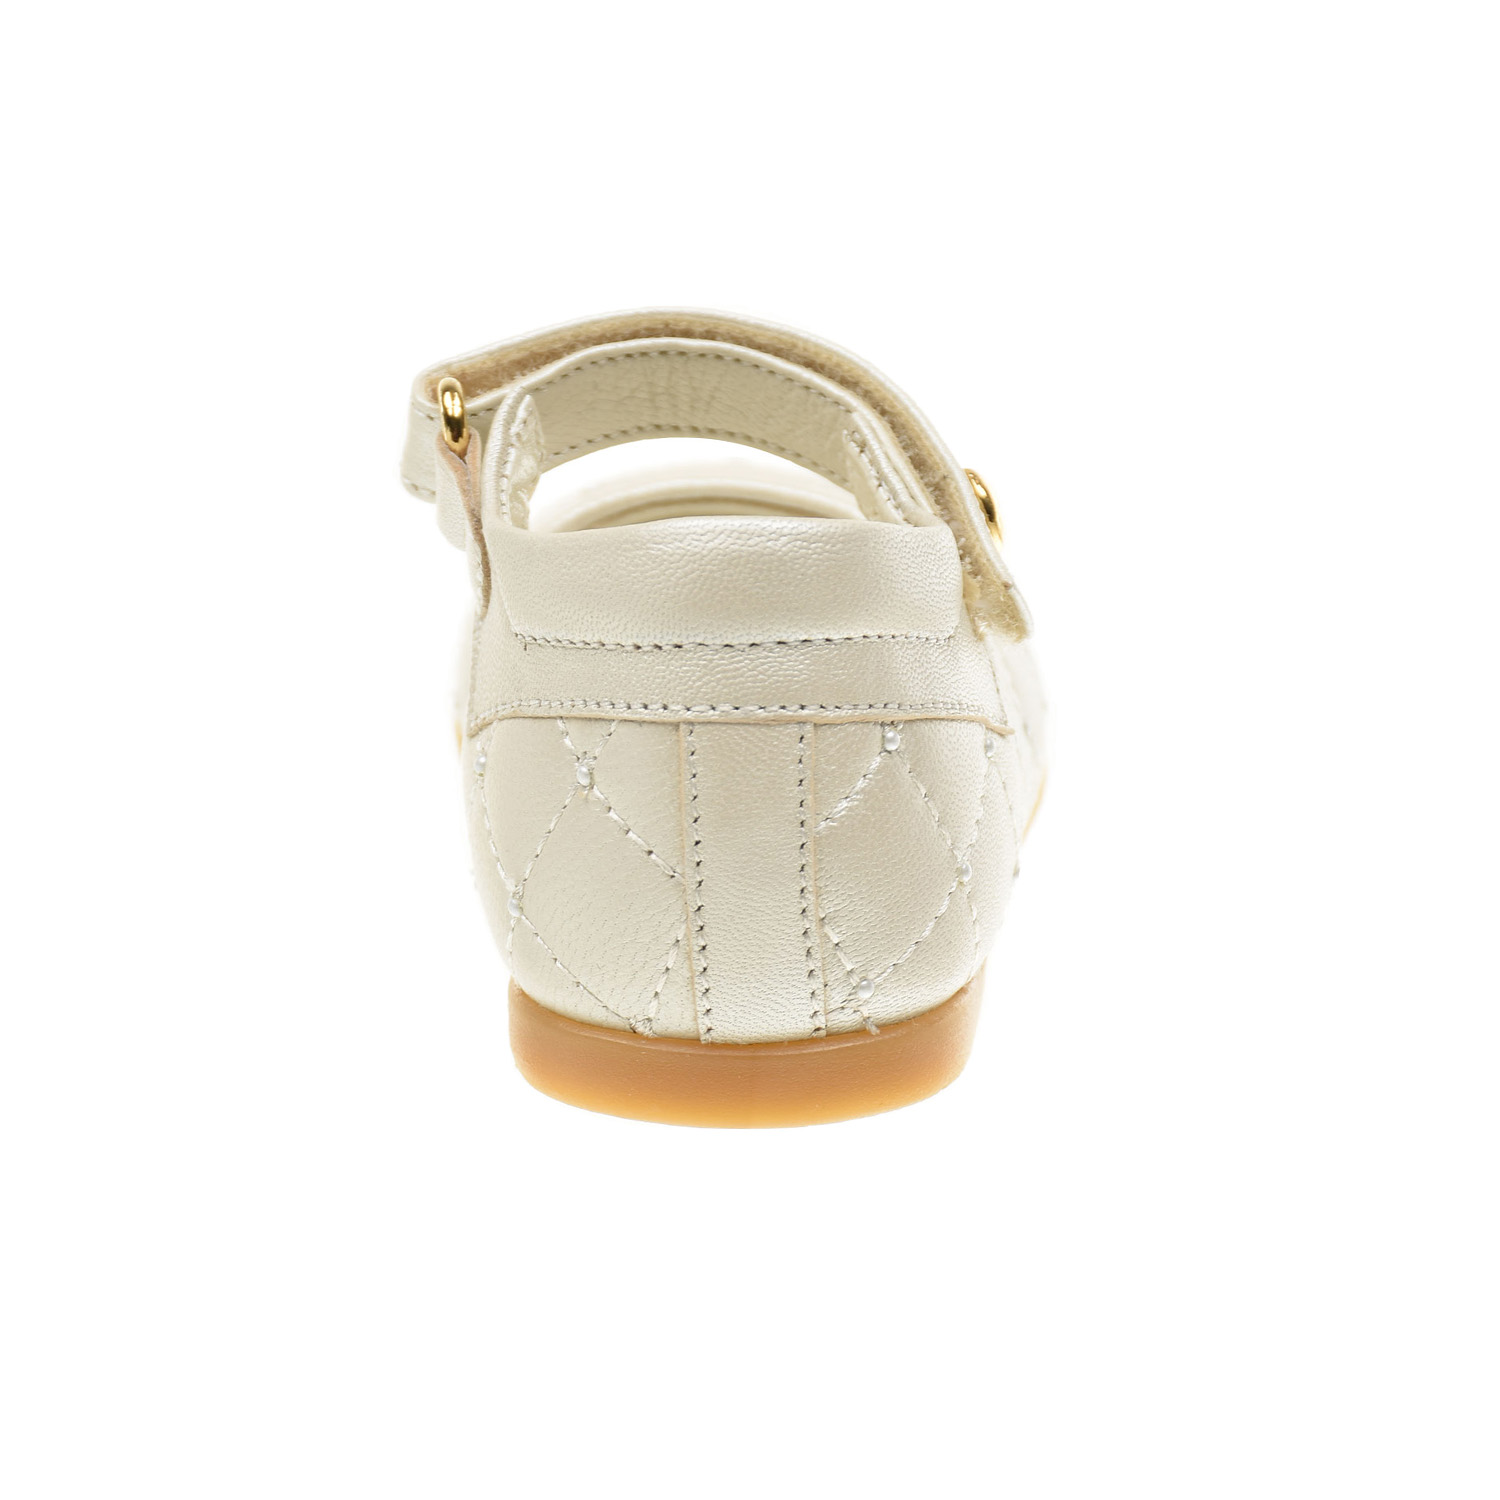 Кожаные туфли со стеганой отделкой Missouri детские, размер 19, цвет кремовый - фото 3